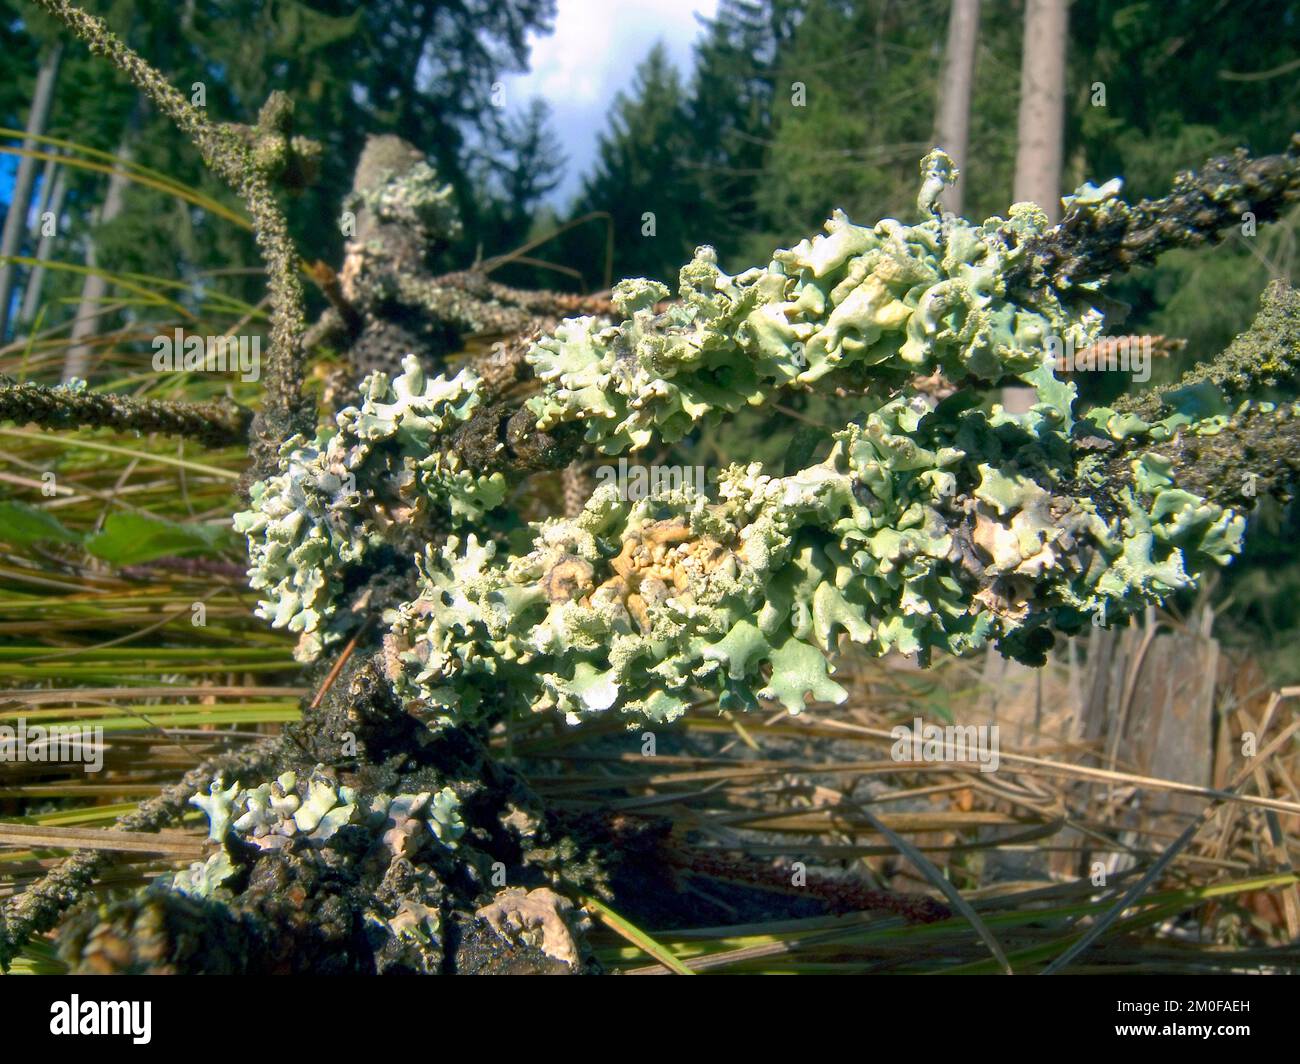 speckled rag lichen, sea-storm lichen, giant shield lichen (Cetrelia cetrarioides), on a branch, Germany Stock Photo